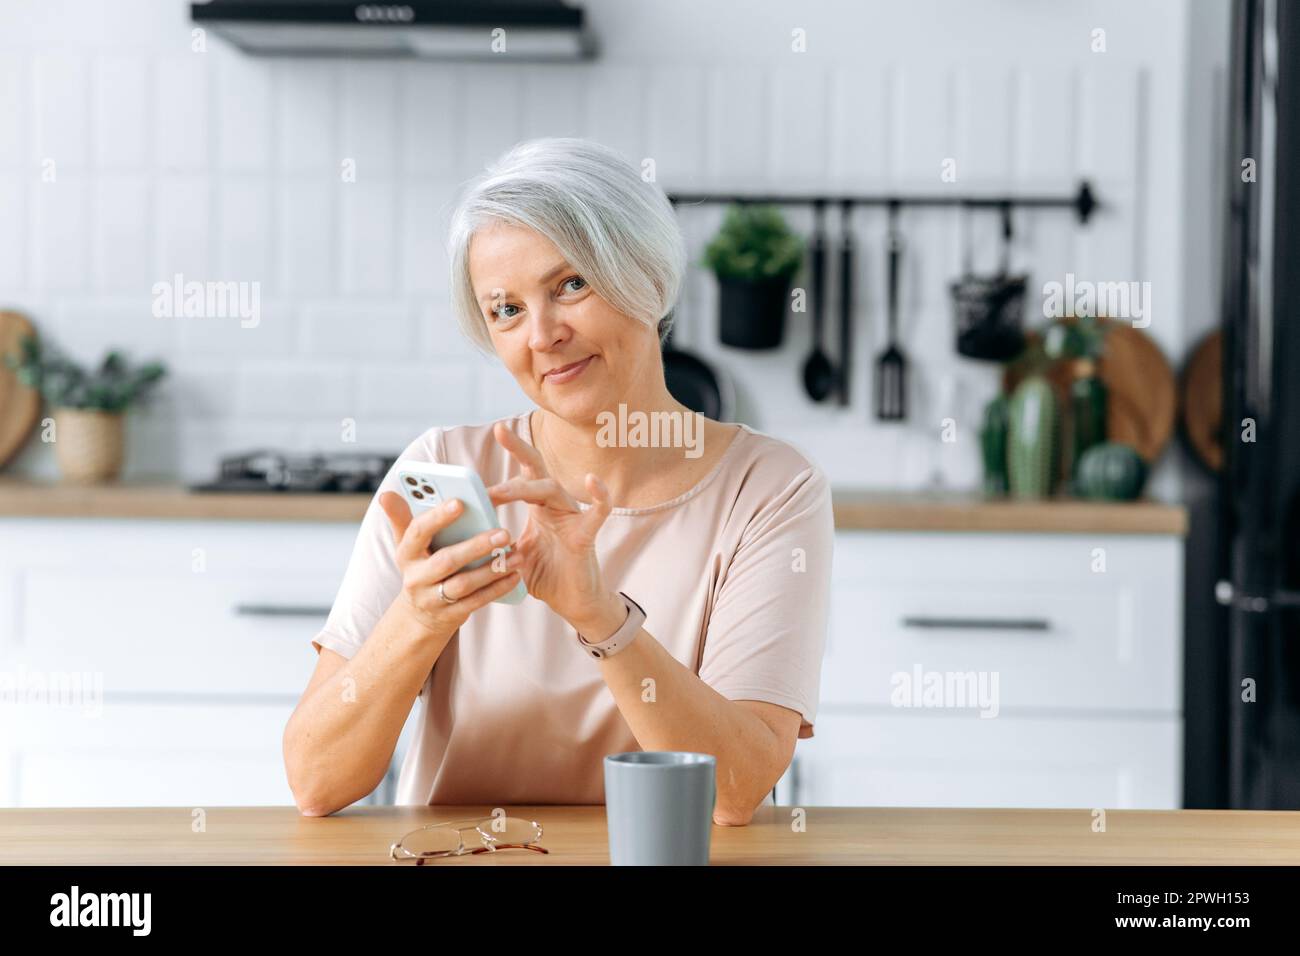 Eine wunderschöne, positive, grauhaarige Frau mittleren Alters, sitzt zu Hause in der Küche, nutzt ihr Smartphone, um in sozialen Netzwerken zu kommunizieren, Nachrichten zu lesen, macht eine Online-Bestellung, lächelt vor der Kamera Stockfoto